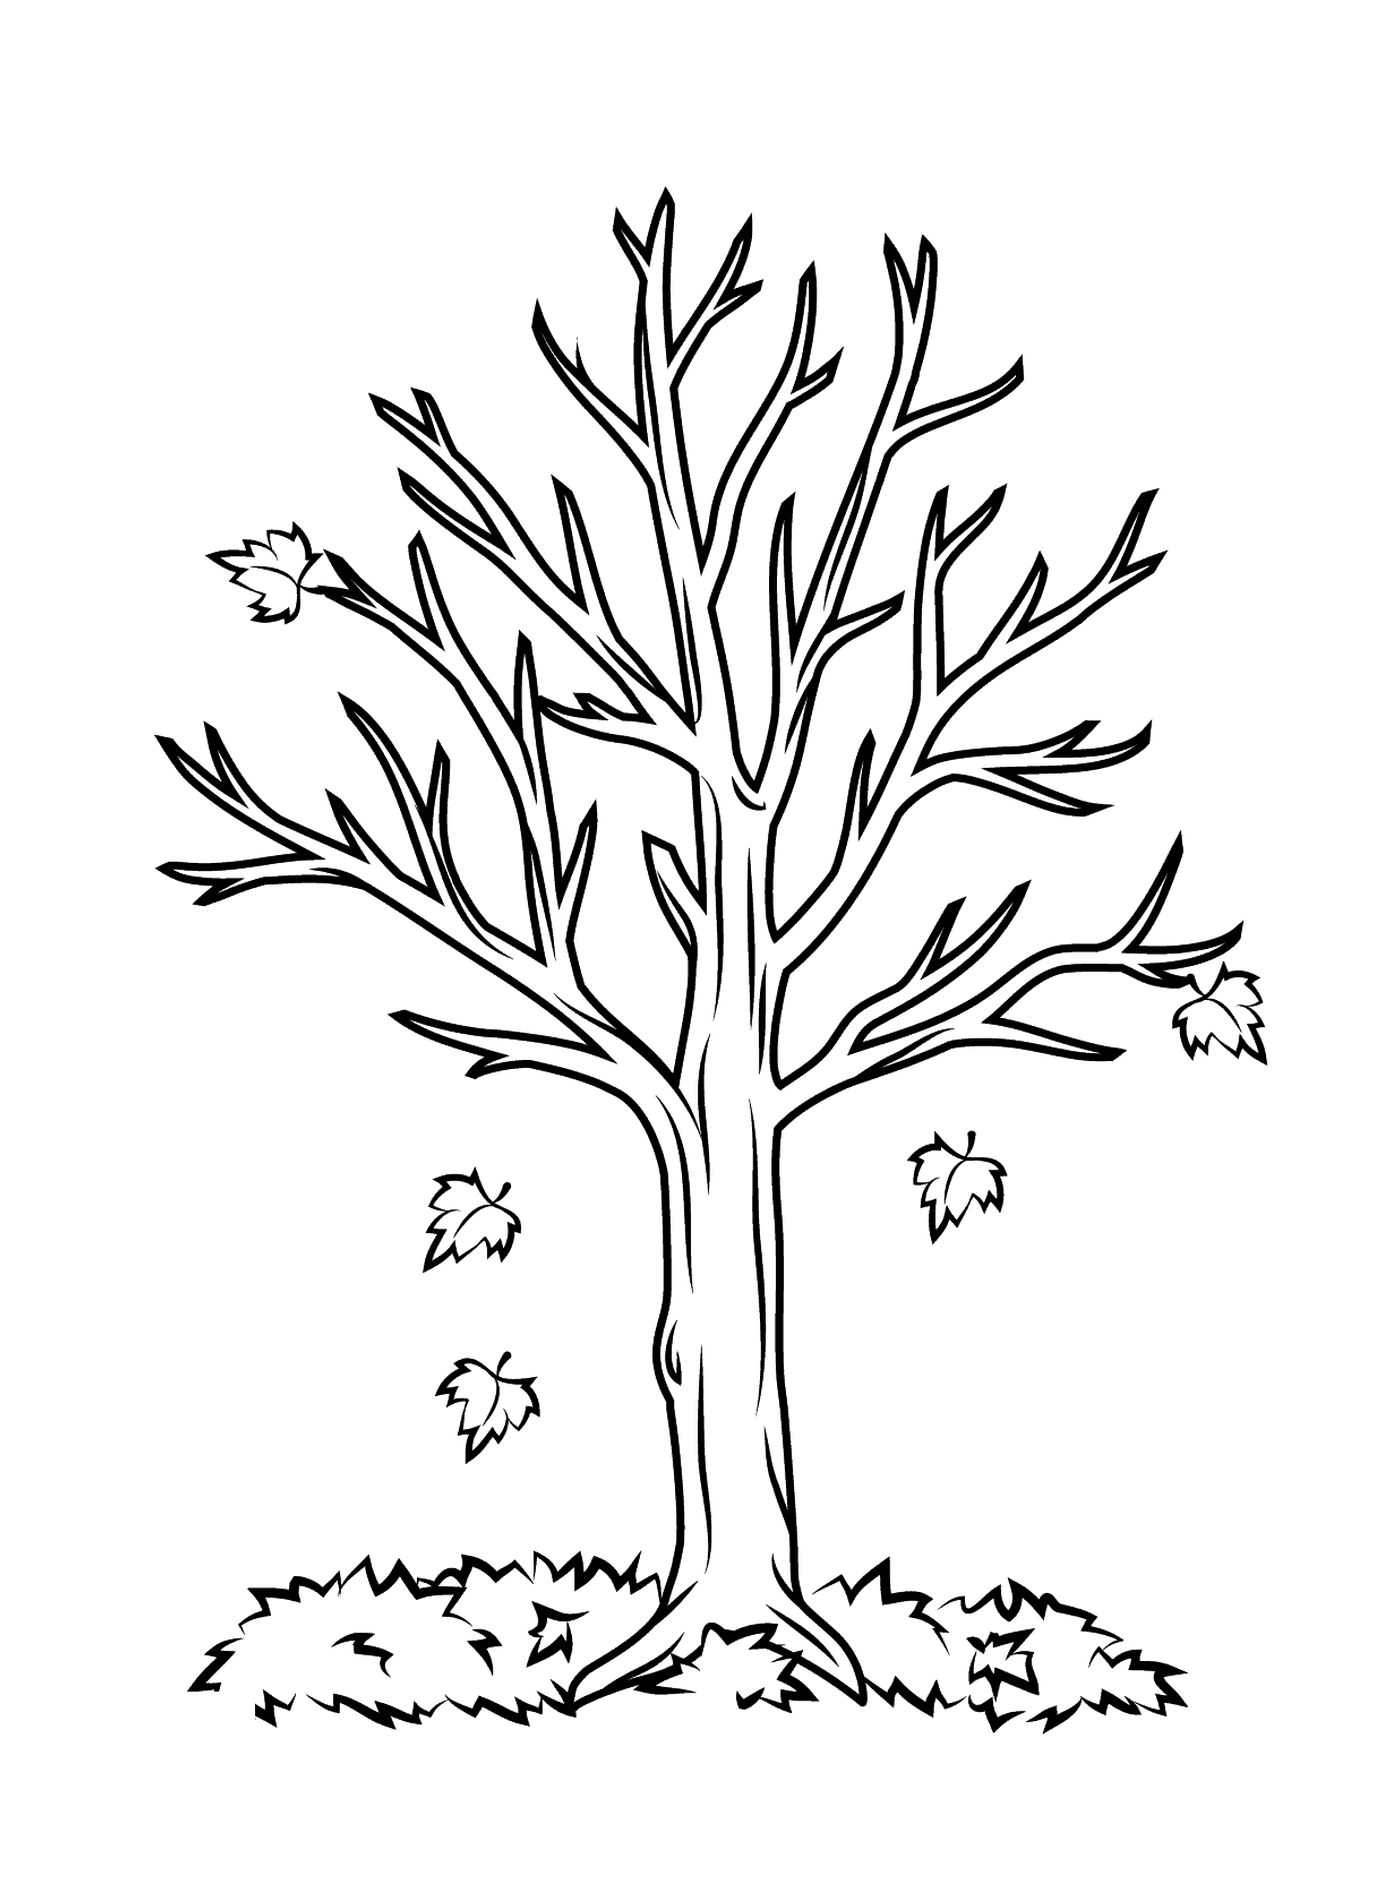  Ein nackter Baum 